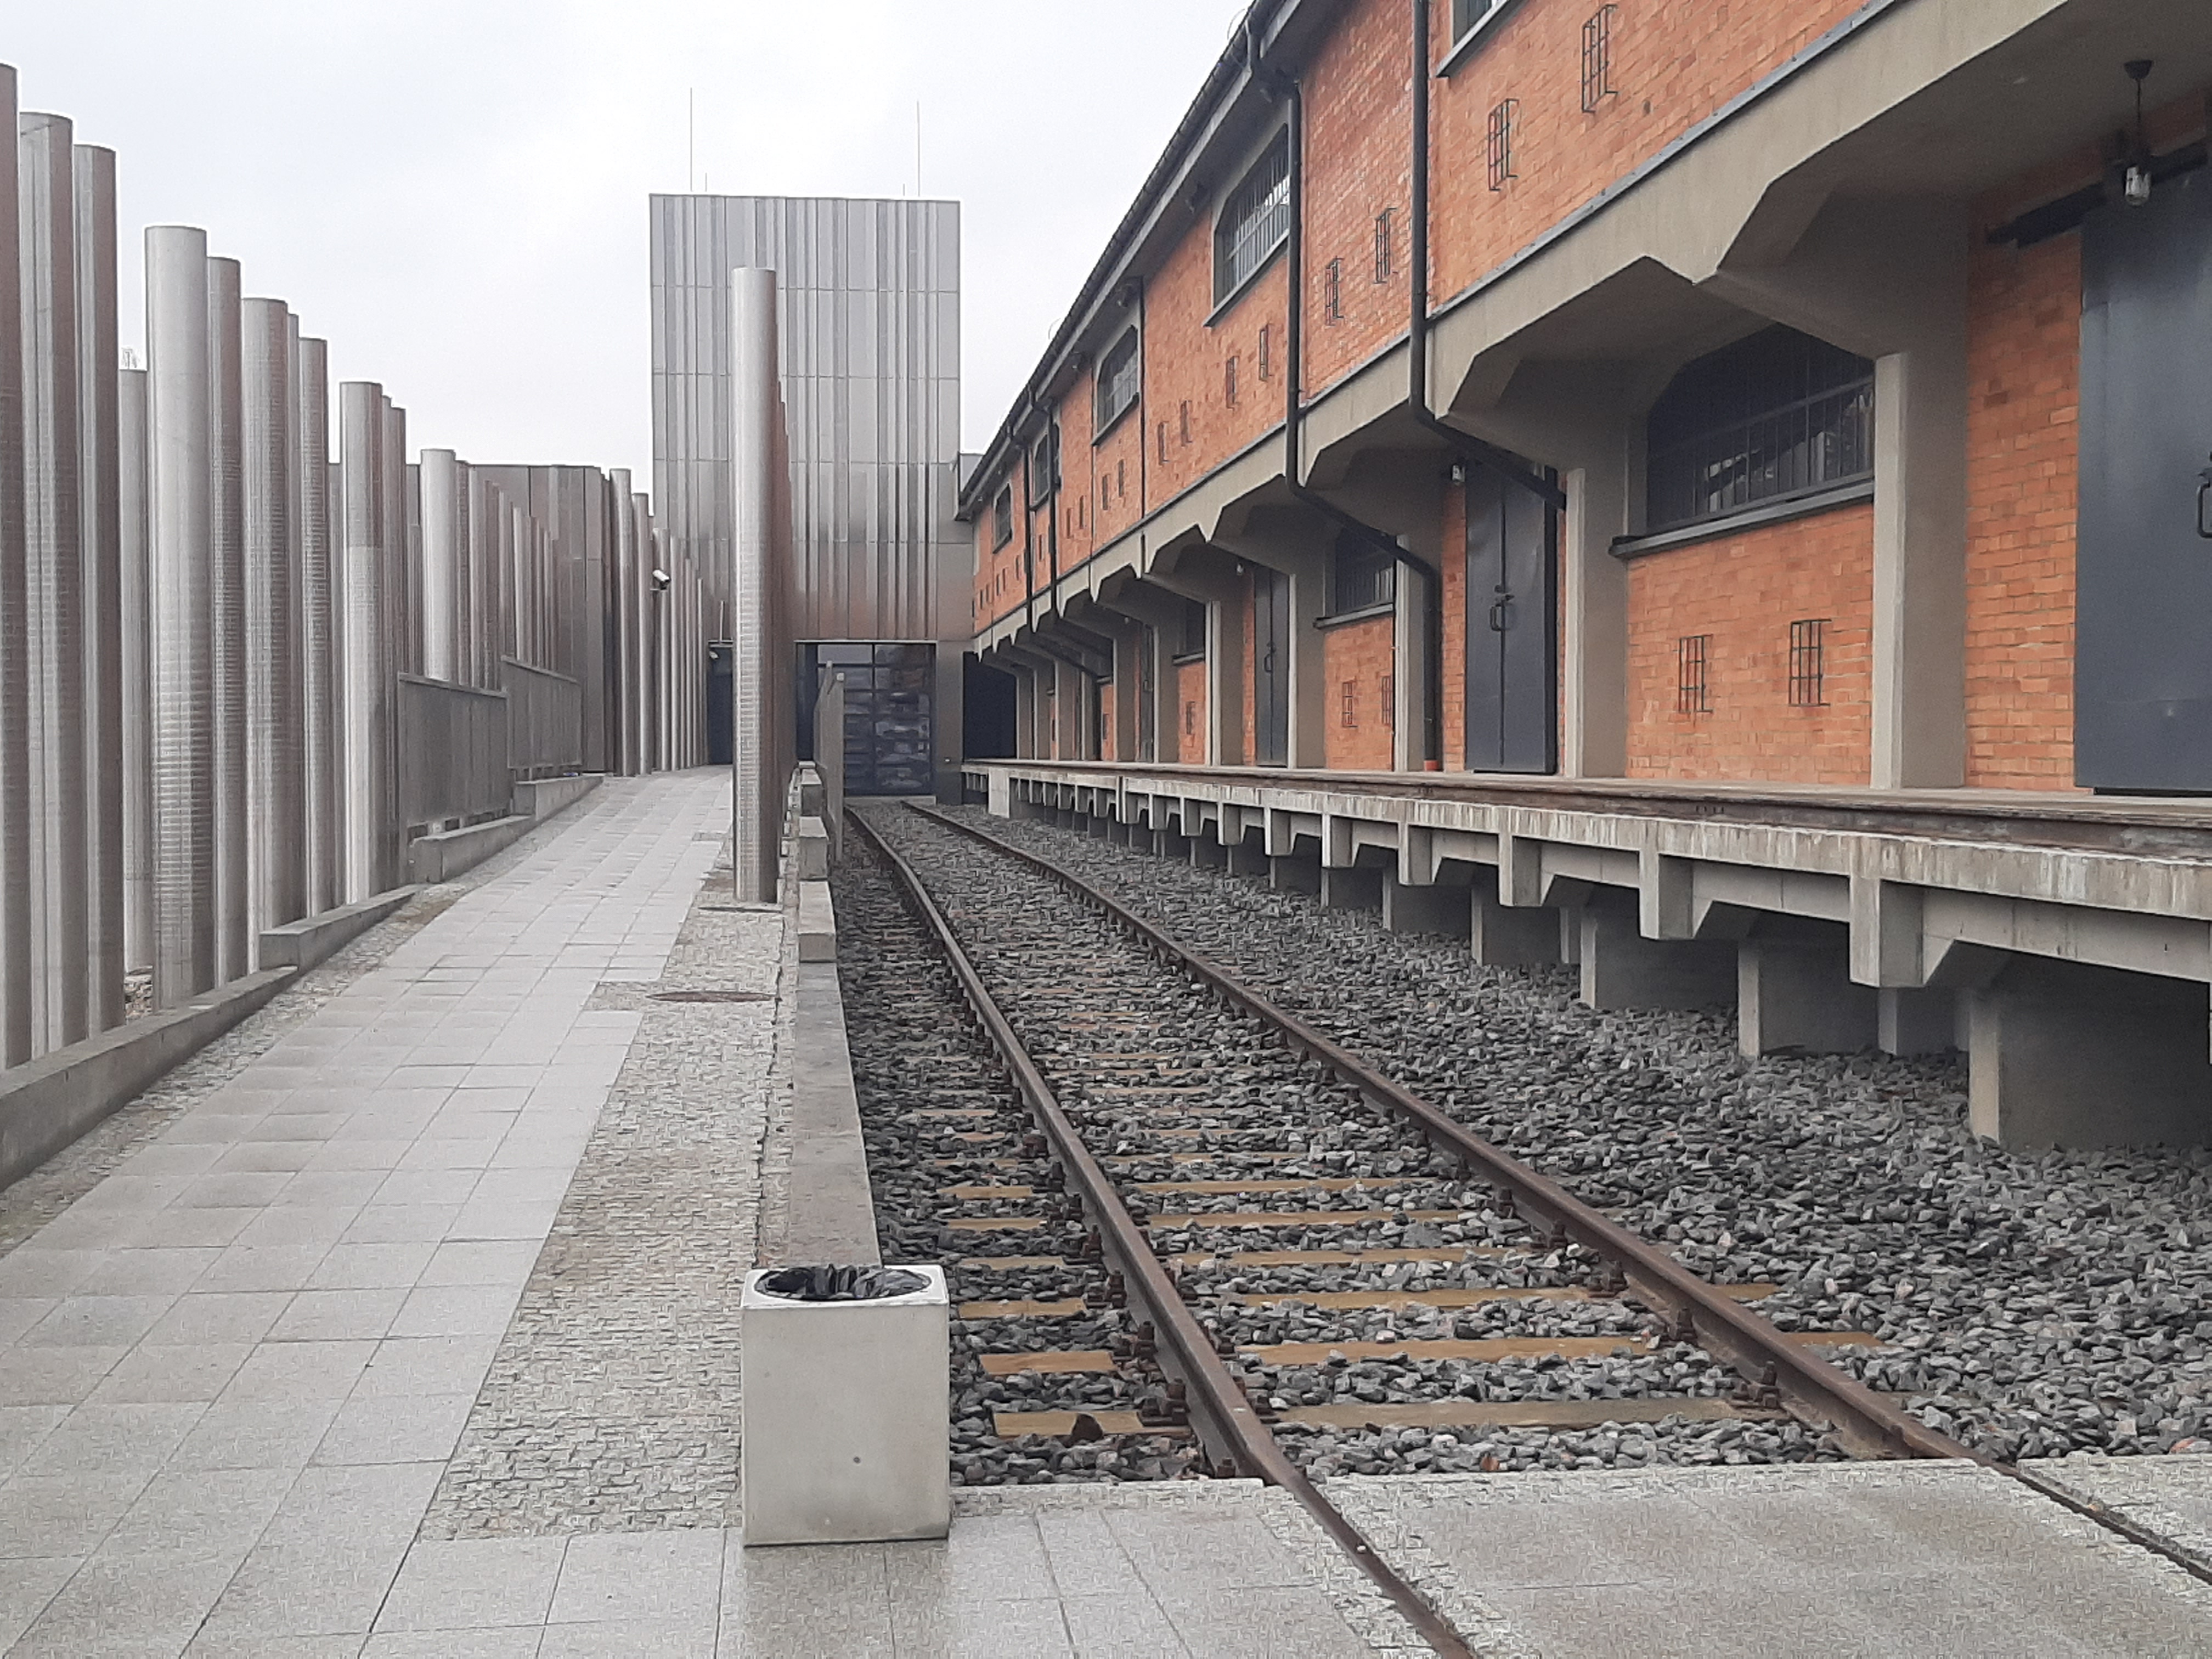 Droga prowadząca do wejścia głównego Muzeum Pamięci Sybiru. Po prawej stronie widoczne są ceglane budynki oraz tory kolejowe. Po lewej stronie są aluminiowe tuby symbolizujące tajgę